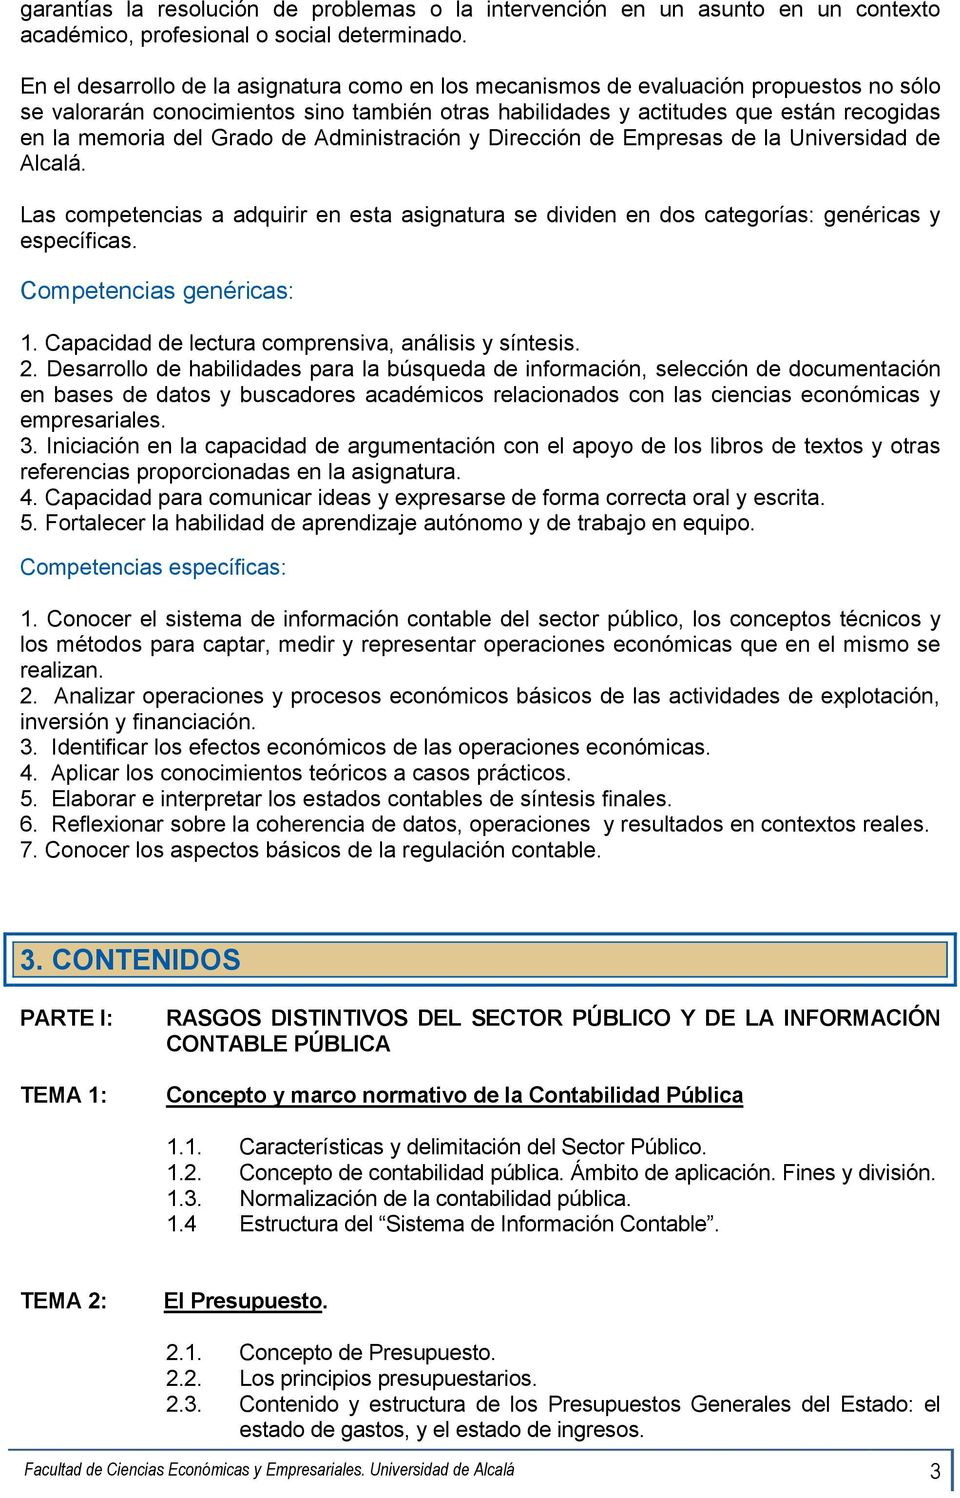 Grado de Administración y Dirección de Empresas de la Universidad de Alcalá. Las competencias a adquirir en esta asignatura se dividen en dos categorías: genéricas y específicas.